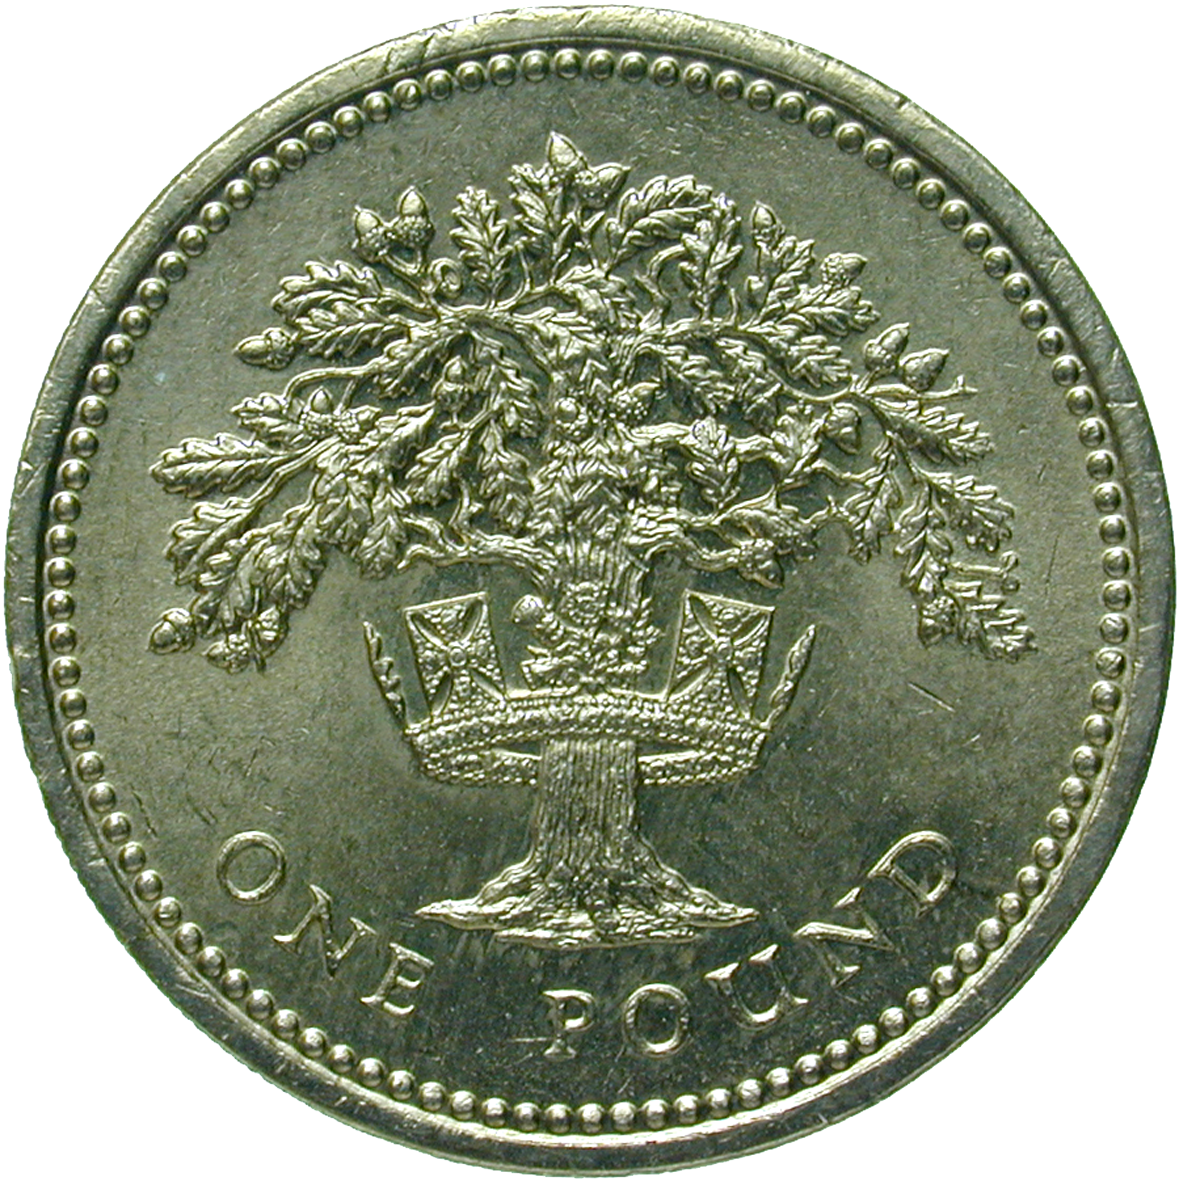 Vereinigtes Königreich Grossbritannien, Elisabeth II., 1 Pfund 1992 (reverse)